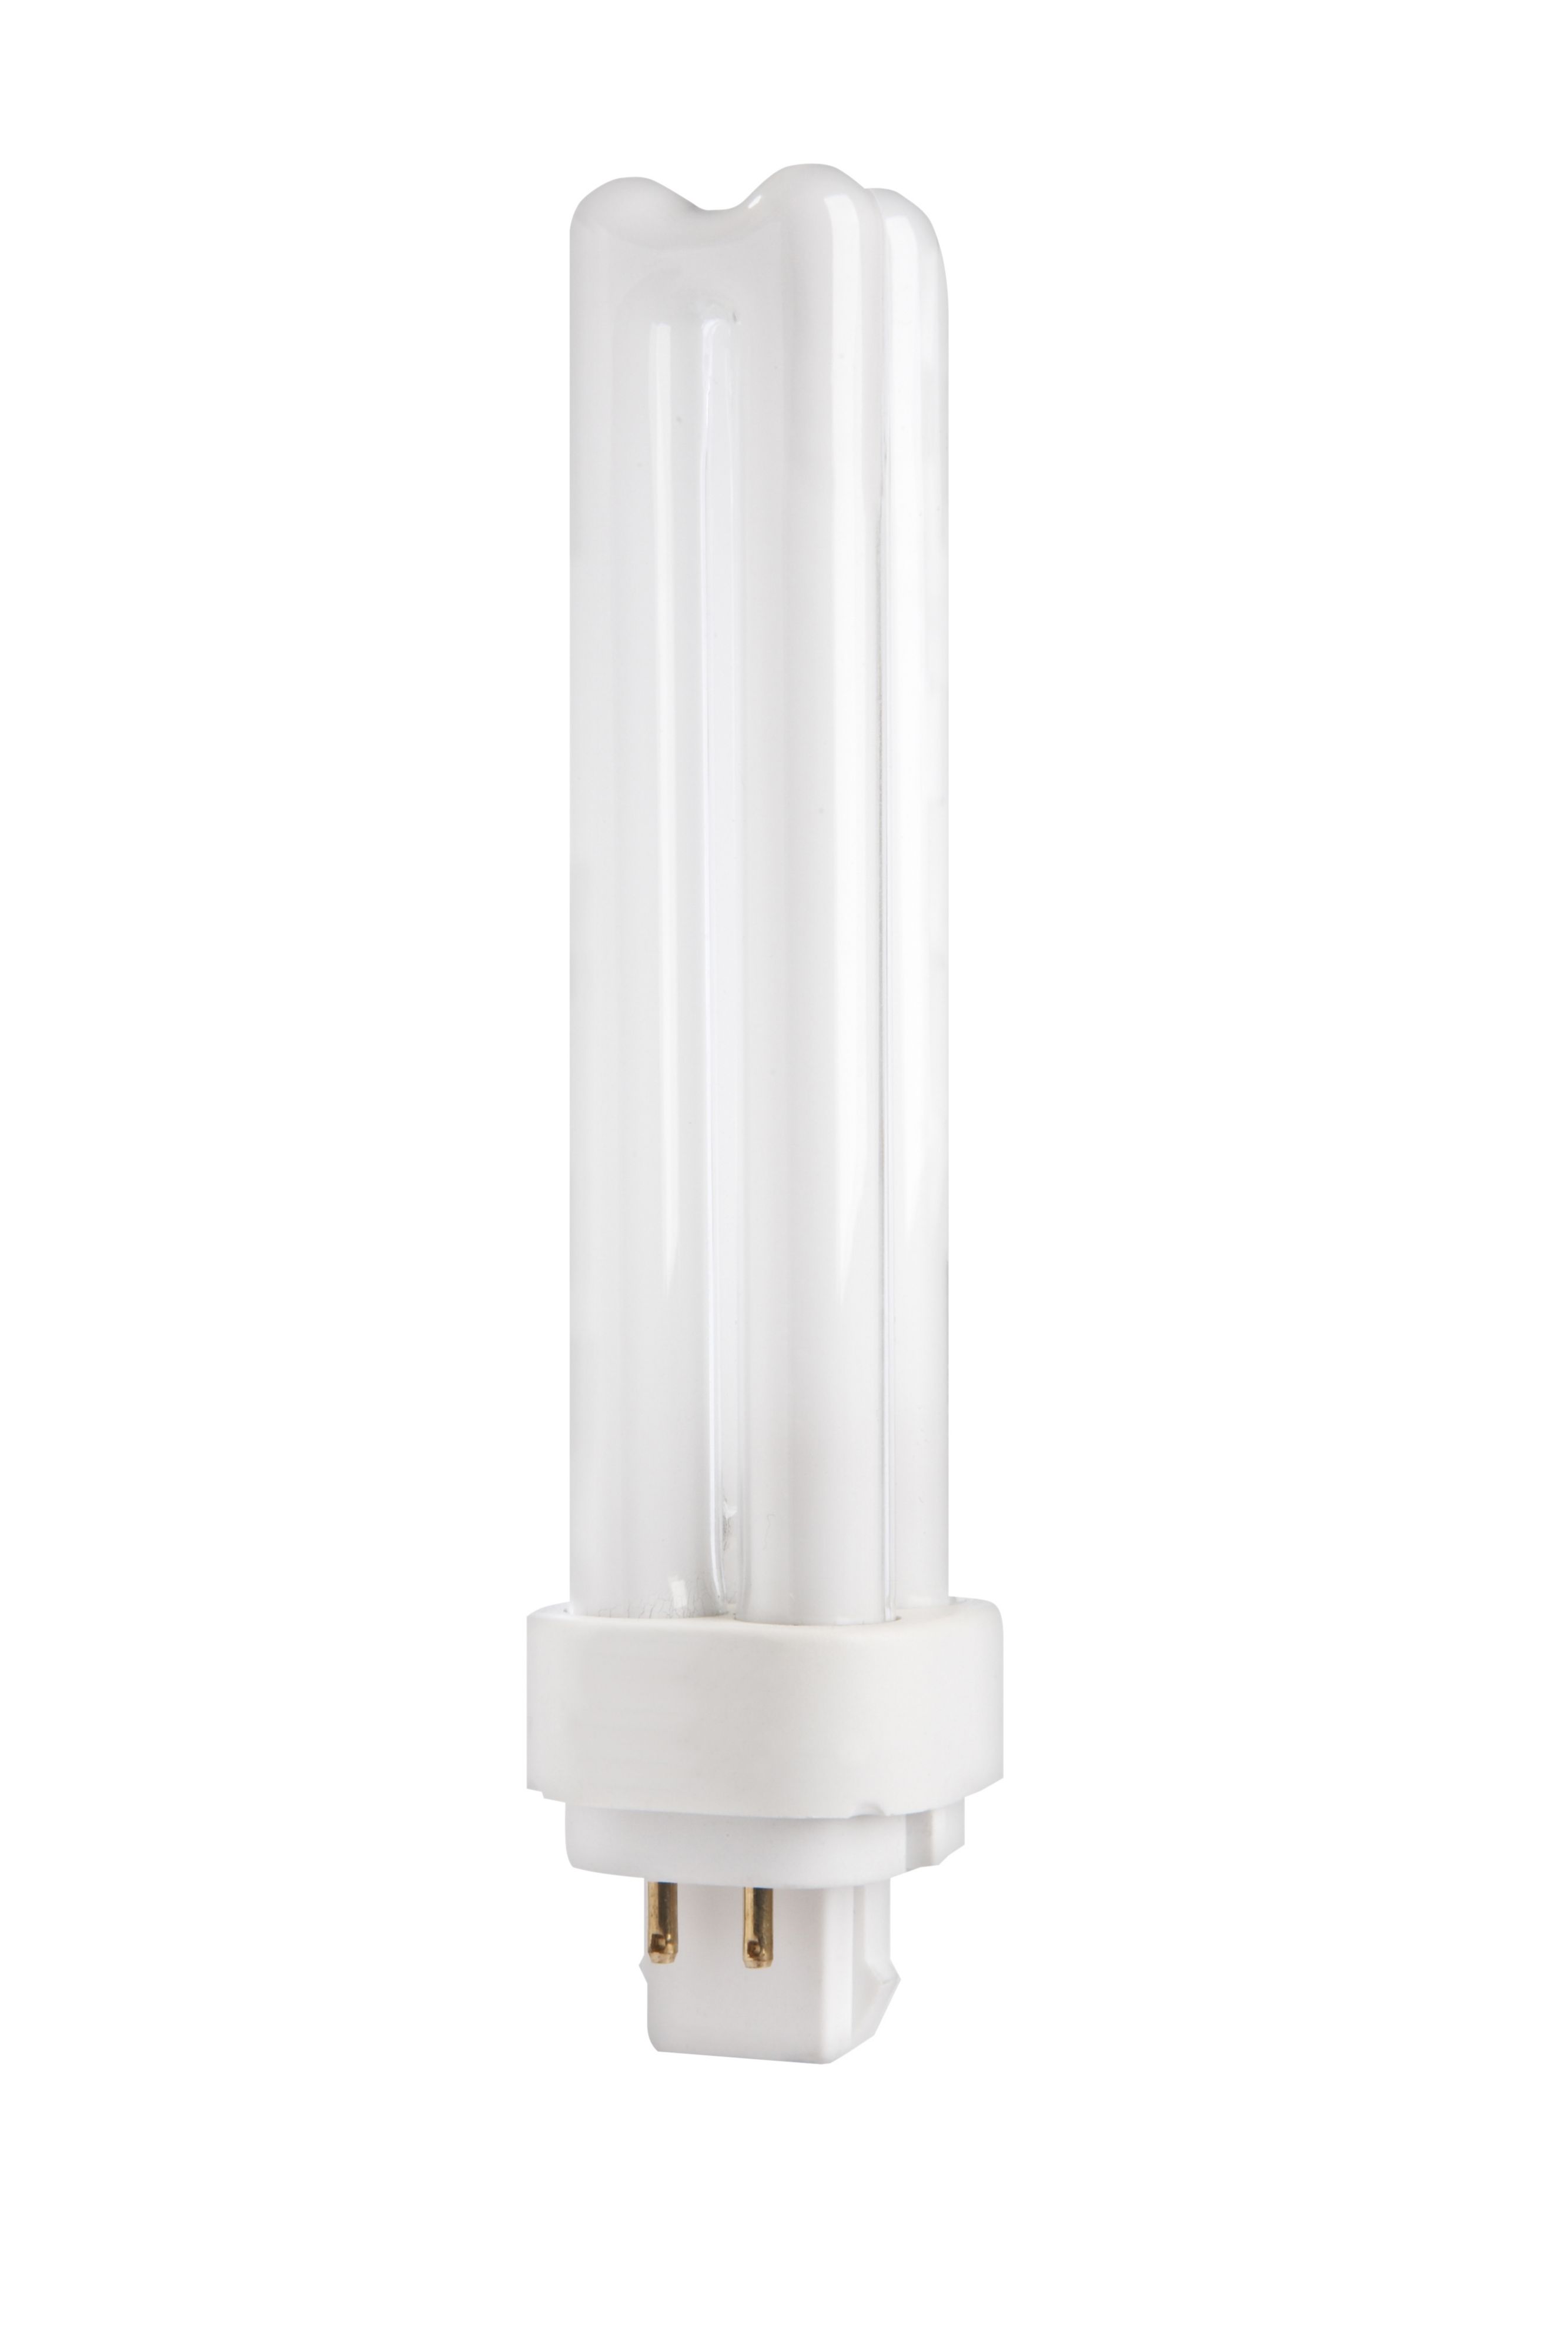 GE Biax D/E Lampe 13 Watt G24q-1 Birne 865 Tageslichweiß 4-Stift LongLast 6500 K 